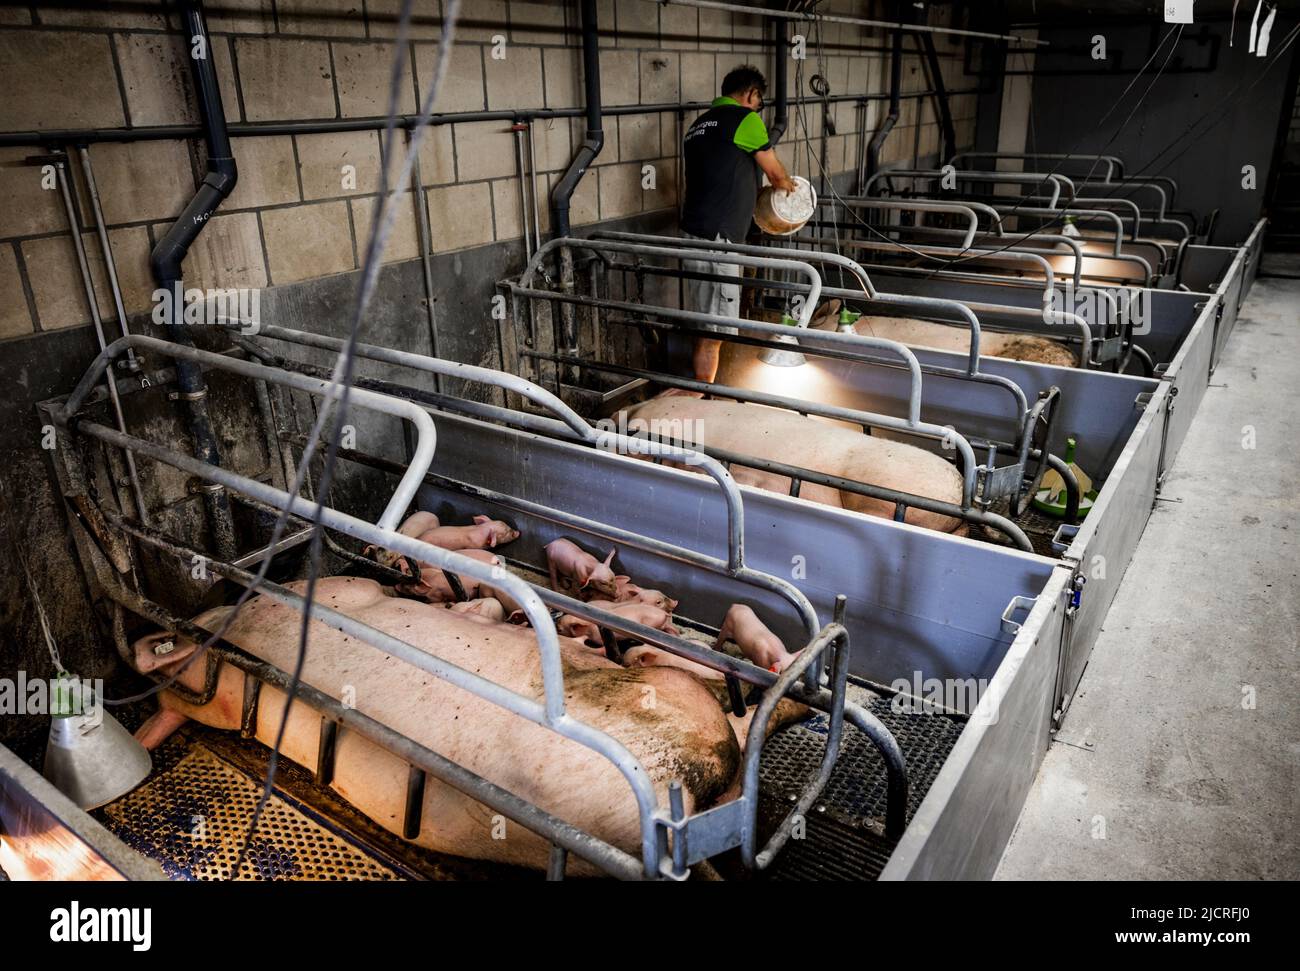 2022-06-15 08:57:40 HALDERBERGE - Ein Schweinezüchter bei der Arbeit unter seinen Schweinen im Stall. Die Halbierung der Stickstoffemissionen wird zu erheblichen Veränderungen in den Gebieten führen. Auch für Noord-Brabant, die Provinz mit den höchsten Stickstoffemissionen, steht ein großer Job bevor. ANP JEFFREY GROENEWEG niederlande Out - belgien Out Stockfoto